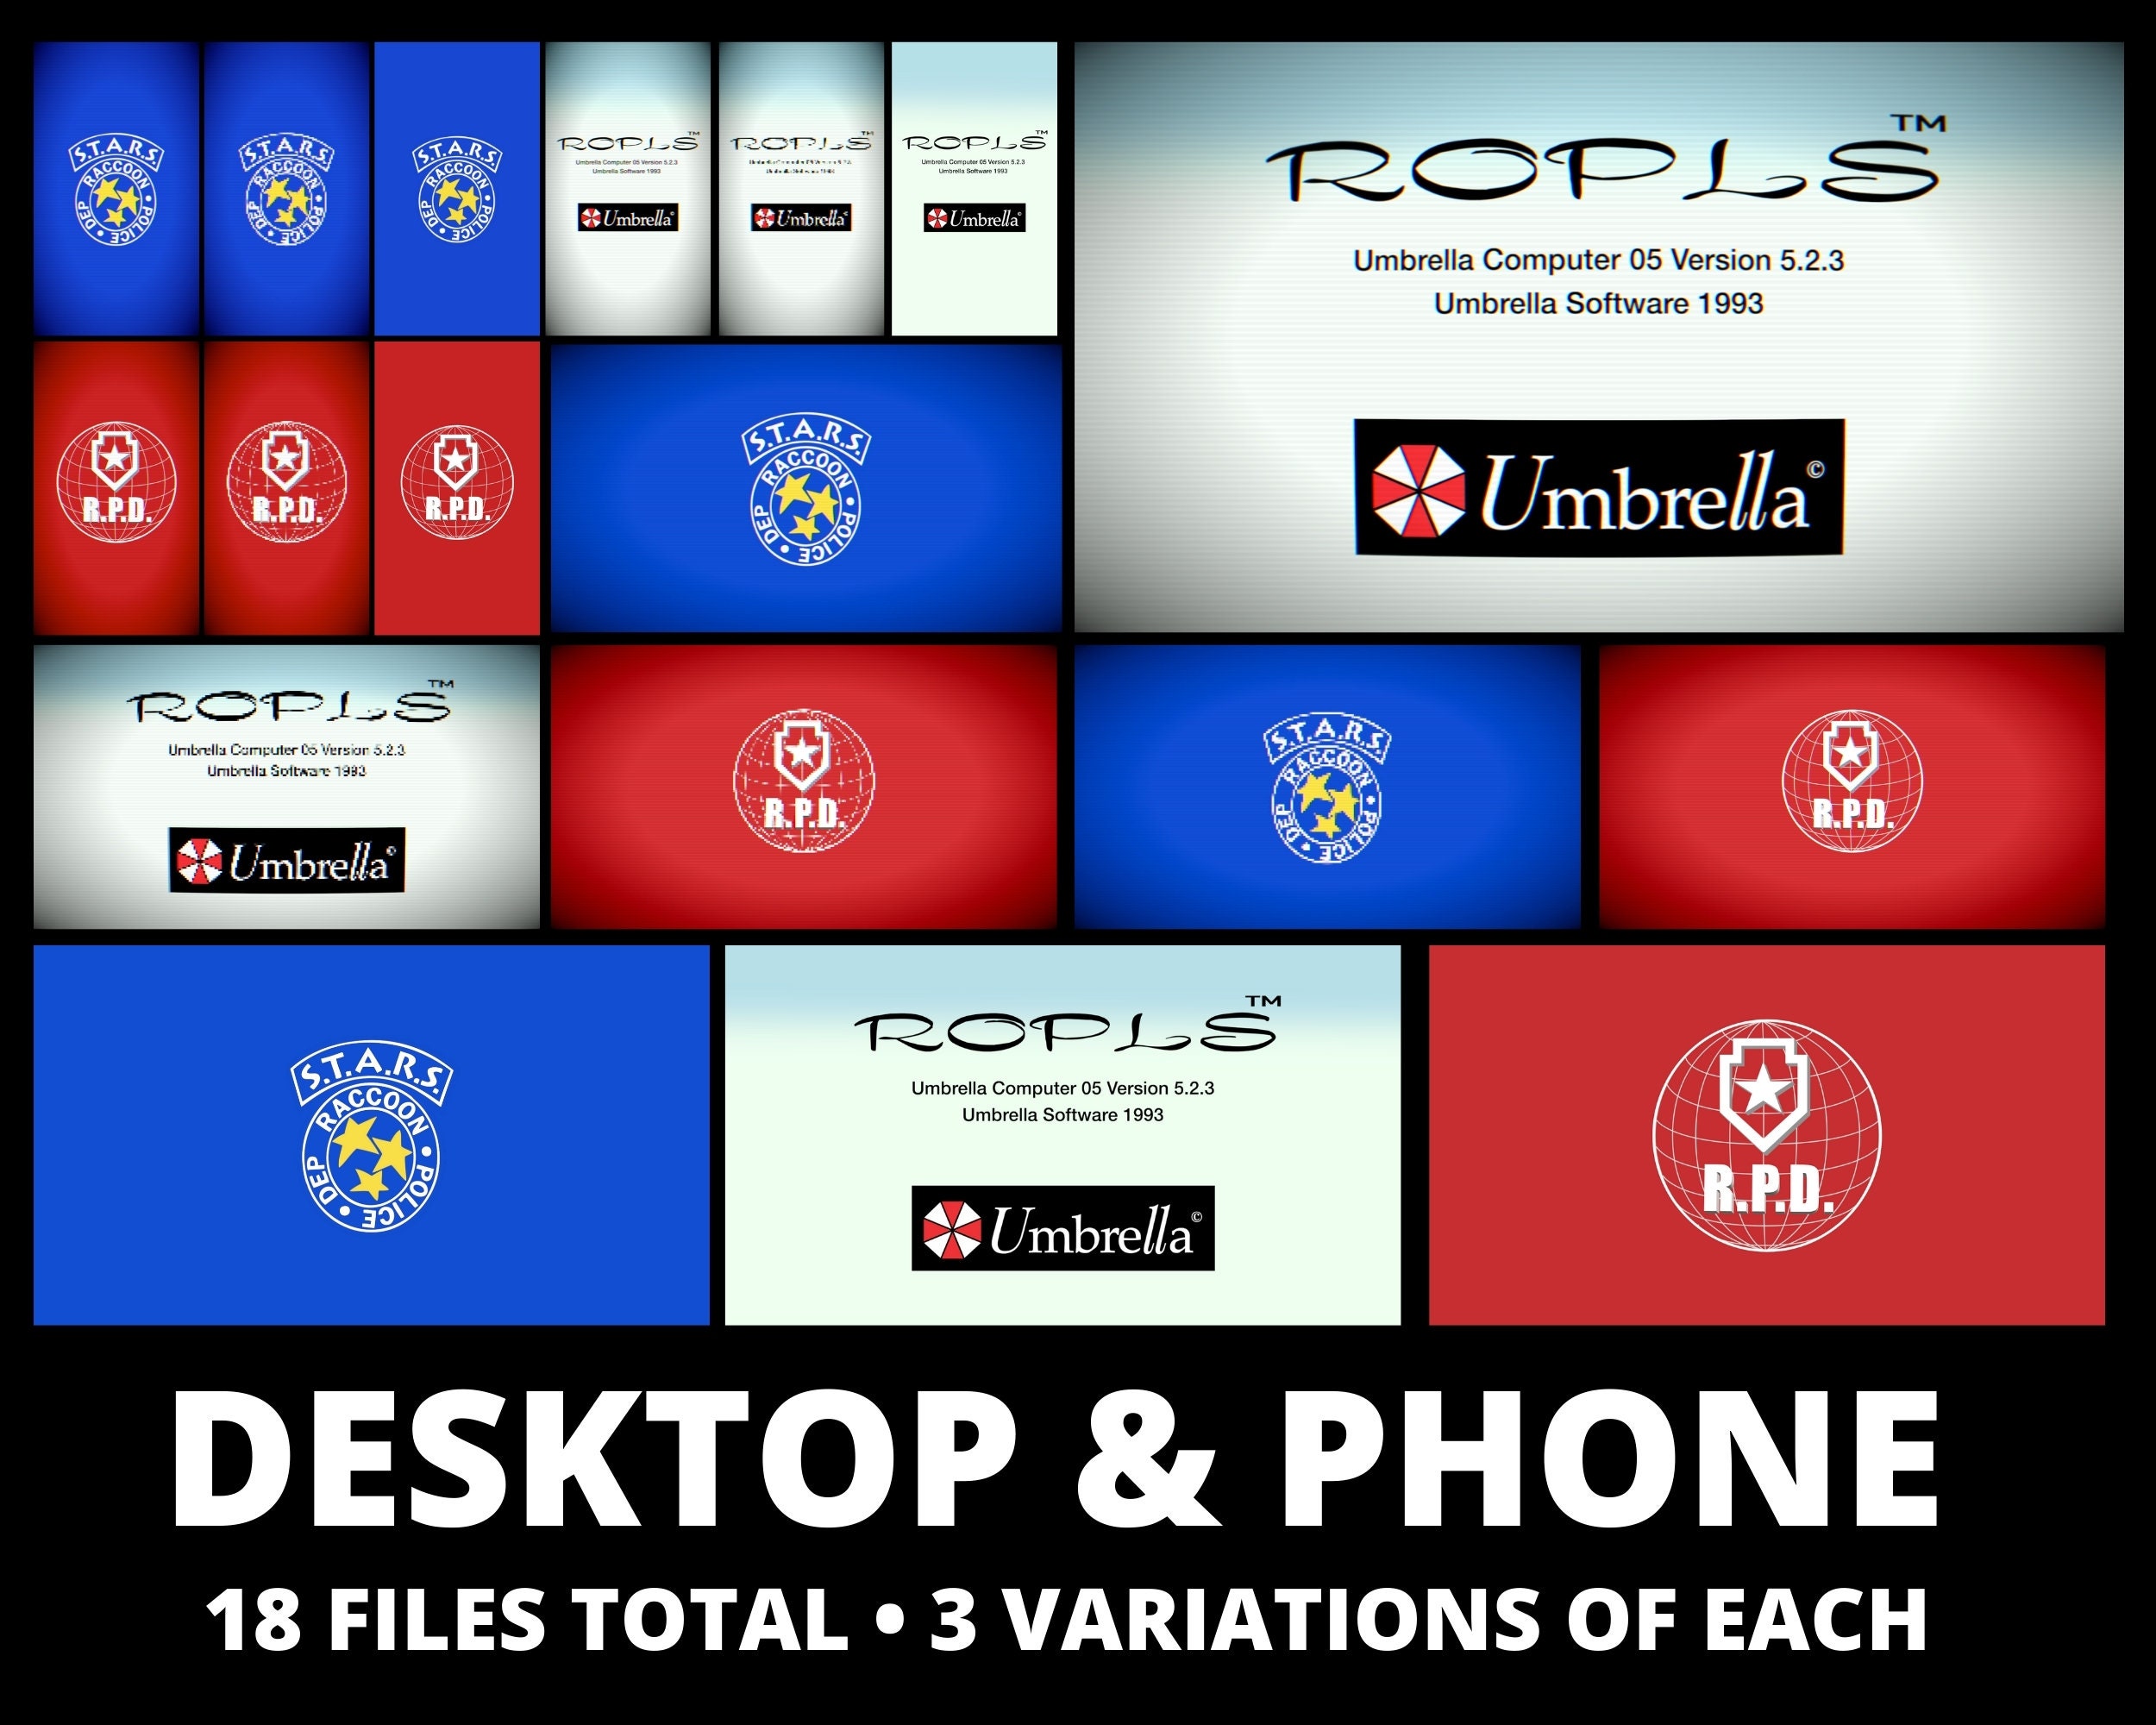 RESIDENT EVIL Retro Wallpaper Pack Phone & Desktop (Instant